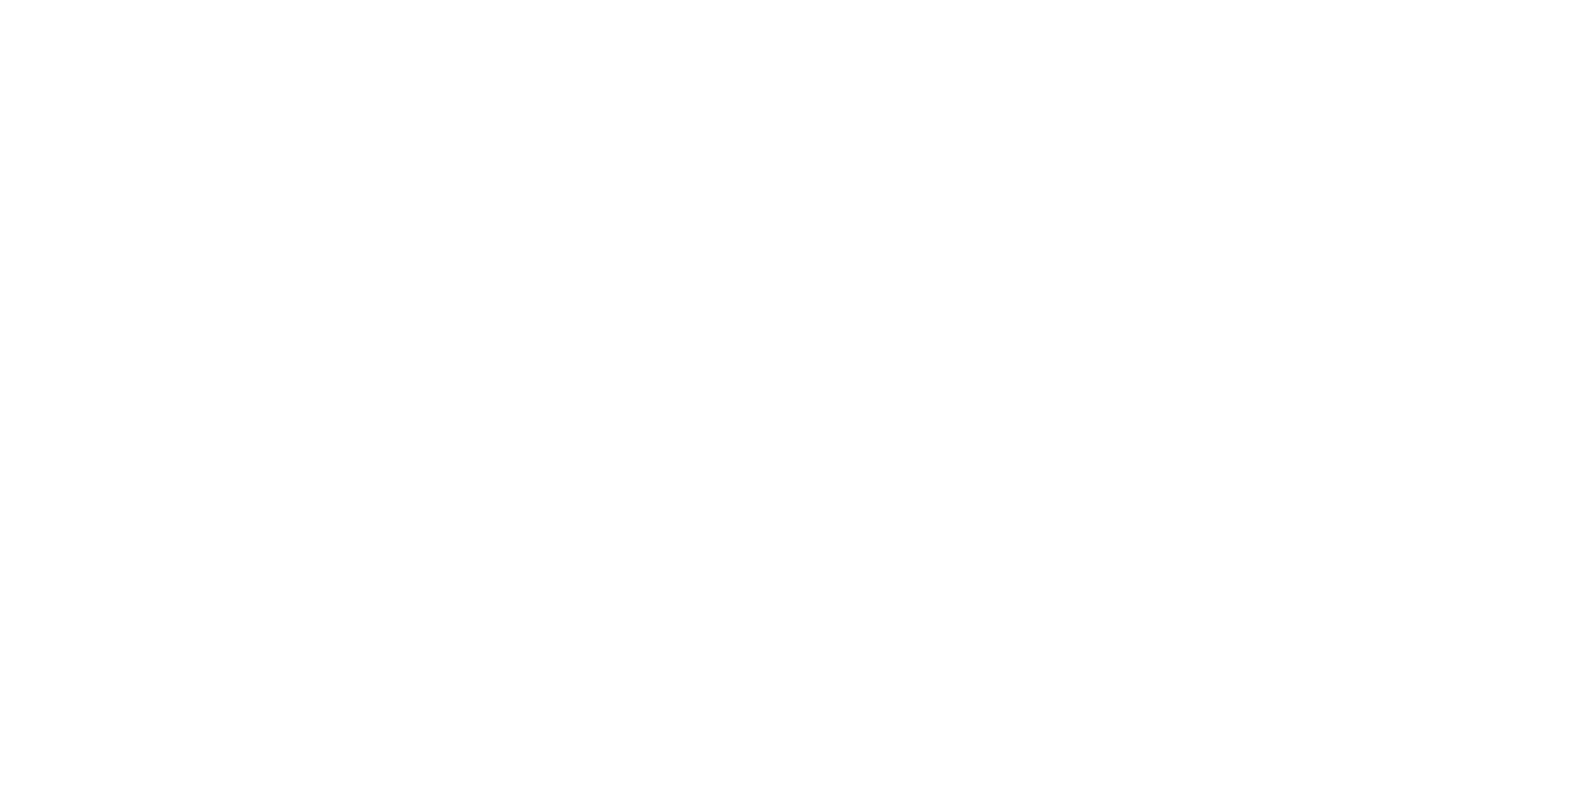 TechTarget logo large for dark backgrounds (transparent PNG)